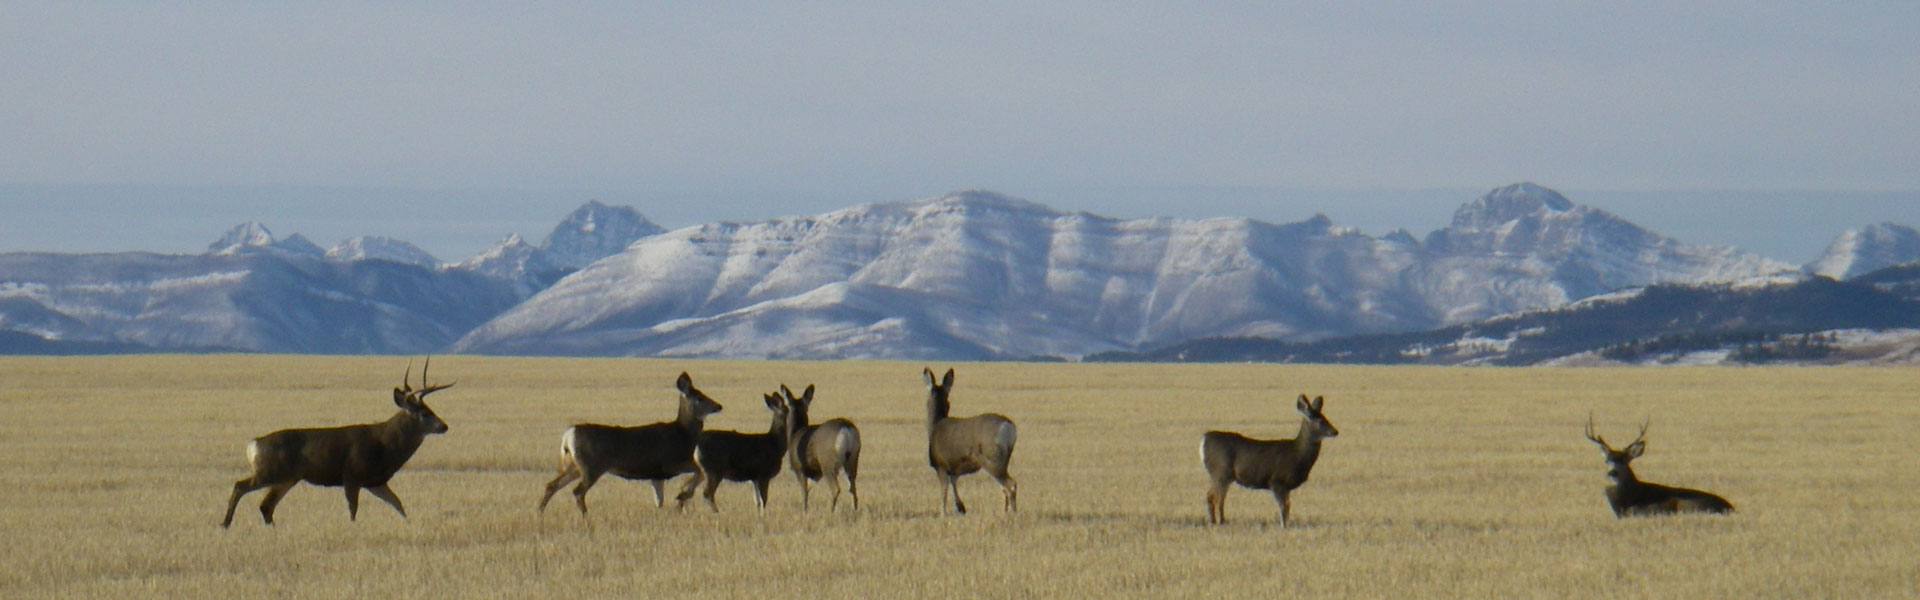 Mule deer prairies